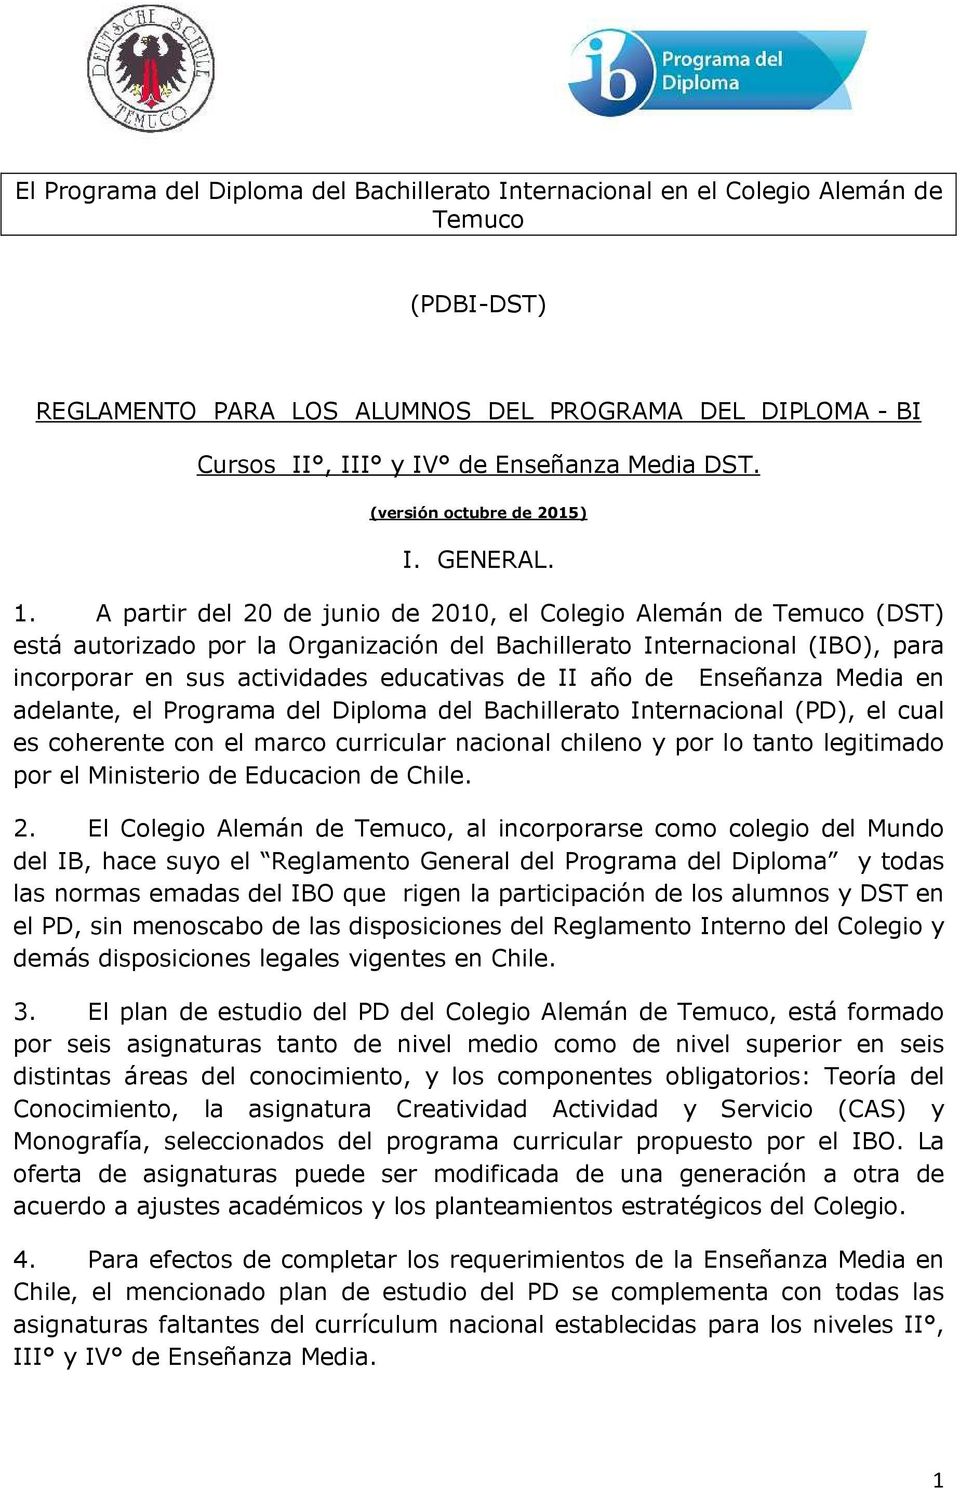 A partir del 20 de junio de 2010, el Colegio Alemán de Temuco (DST) está autorizado por la Organización del Bachillerato Internacional (IBO), para incorporar en sus actividades educativas de II año